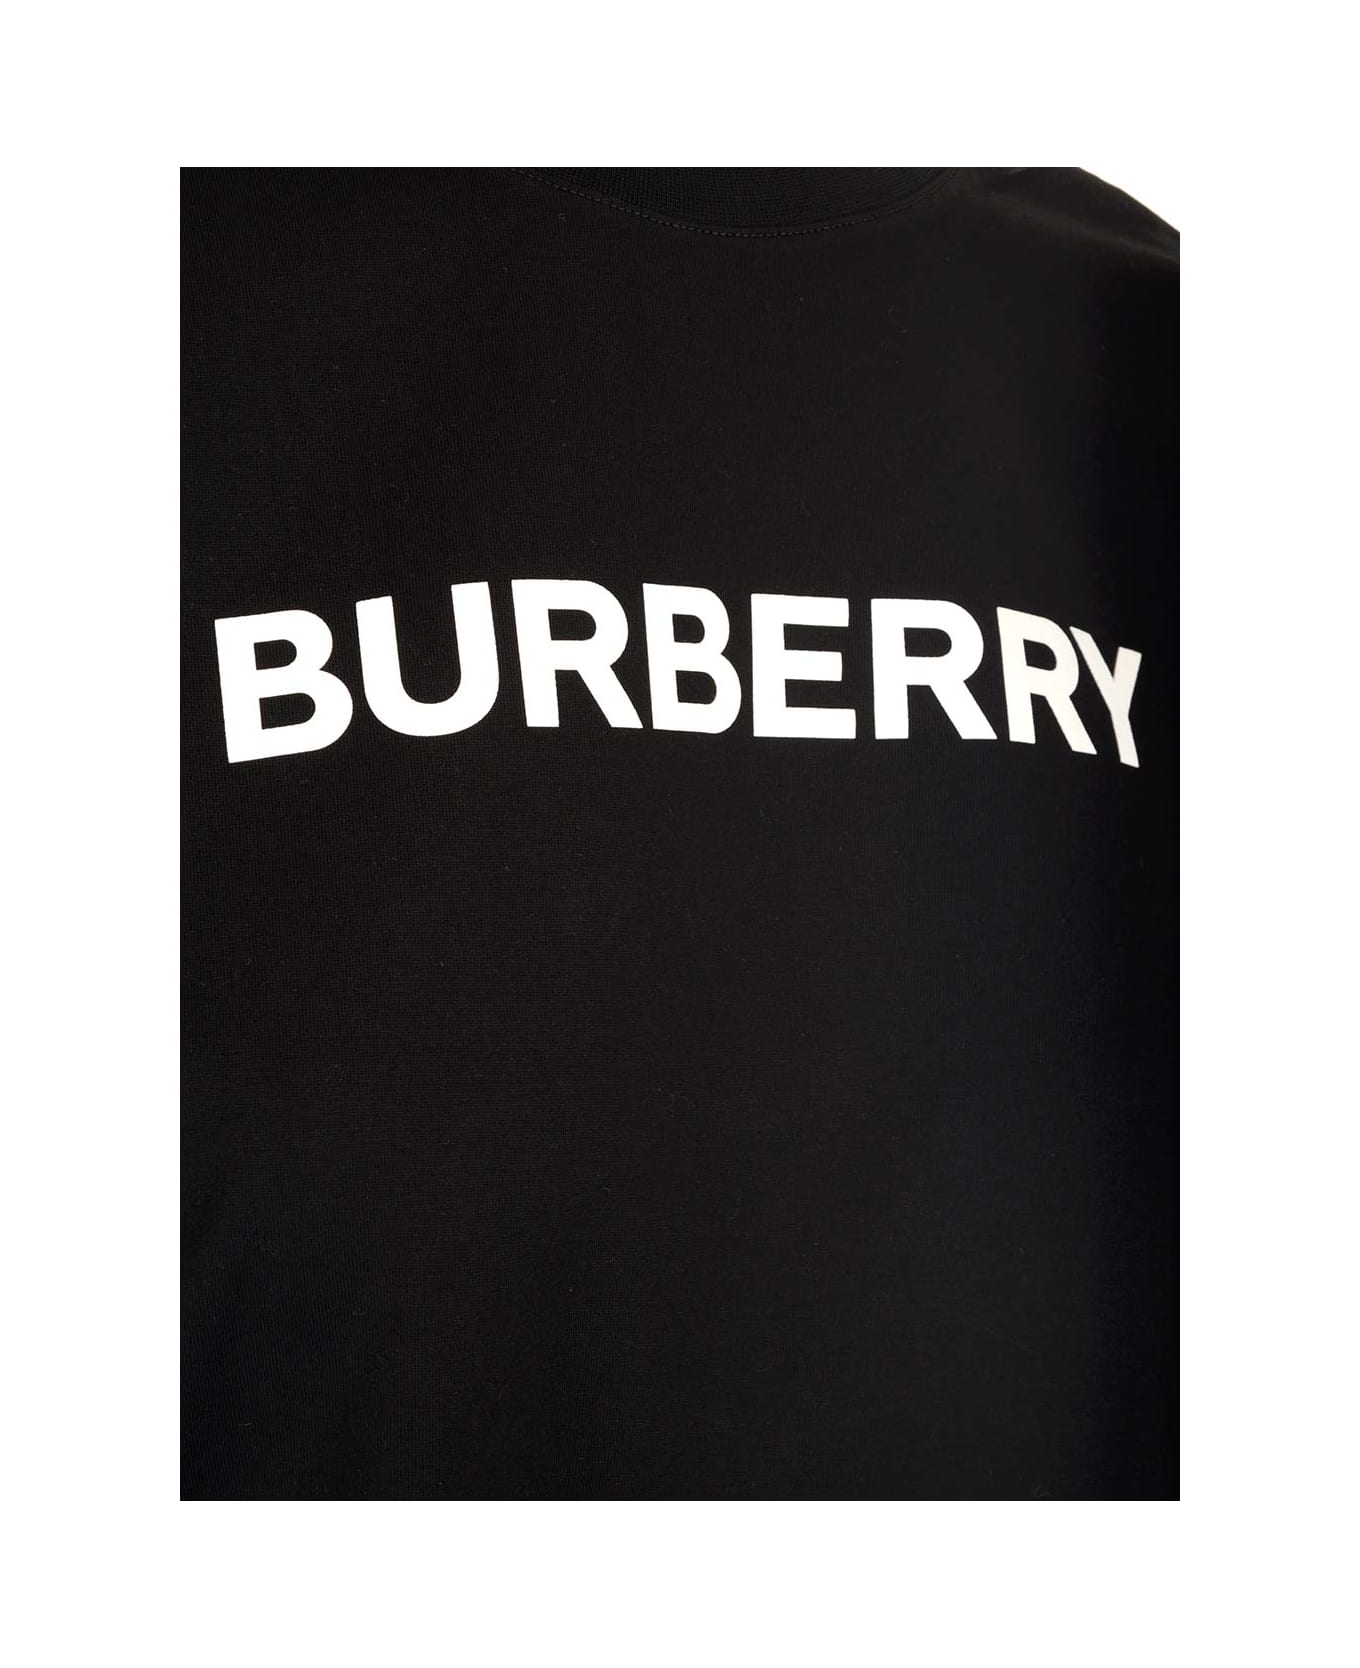 Burberry 'margot' T-shirt - Black